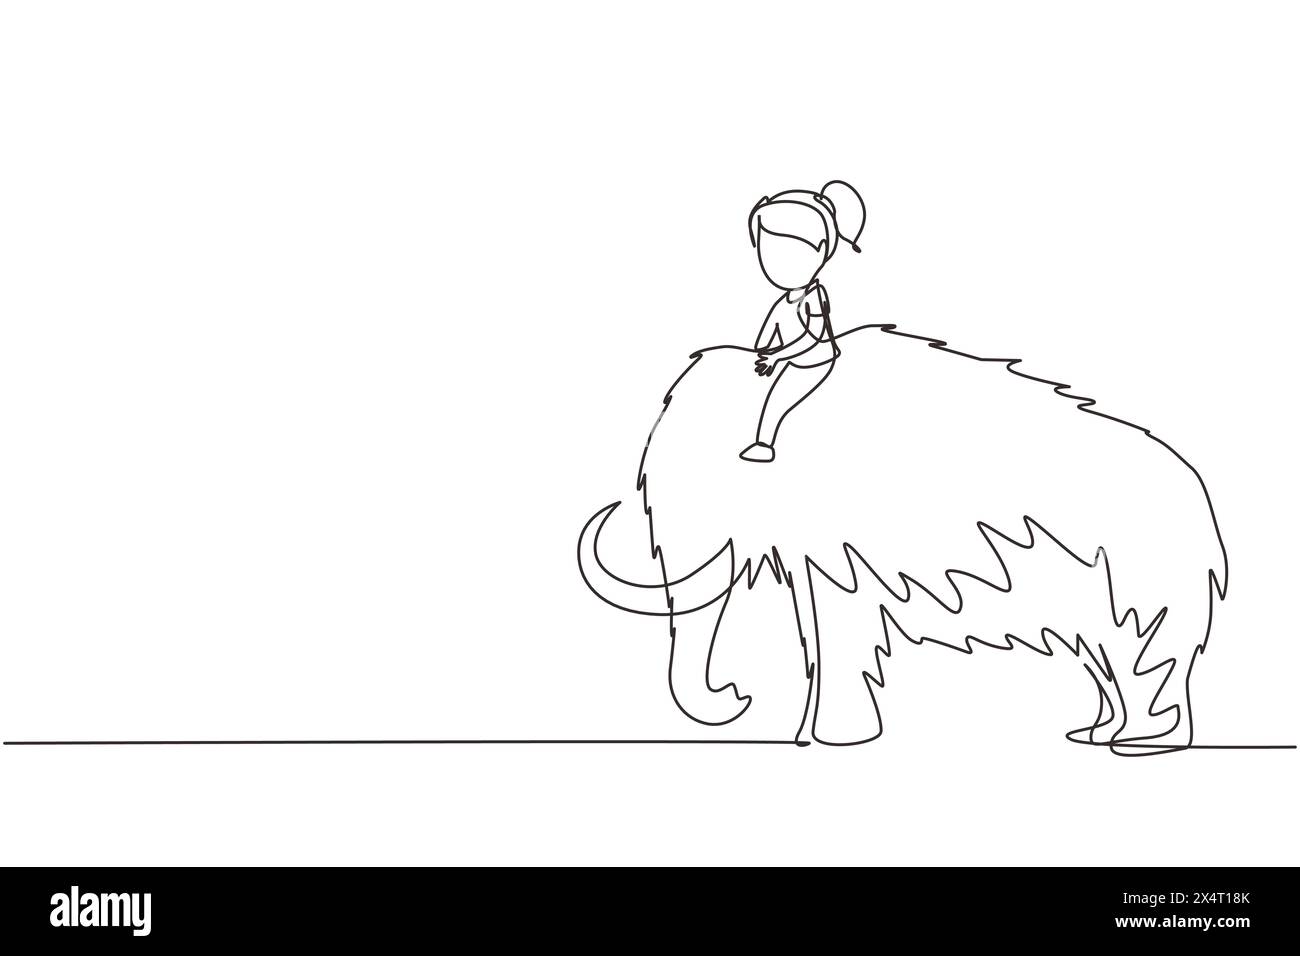 Linea singola continua che disegna una bambina cavalcatrice che cavalca mammut lanuginoso. Ragazzino seduto sul retro del mammut. Bambini dell'età della pietra. Antica vita umana Illustrazione Vettoriale